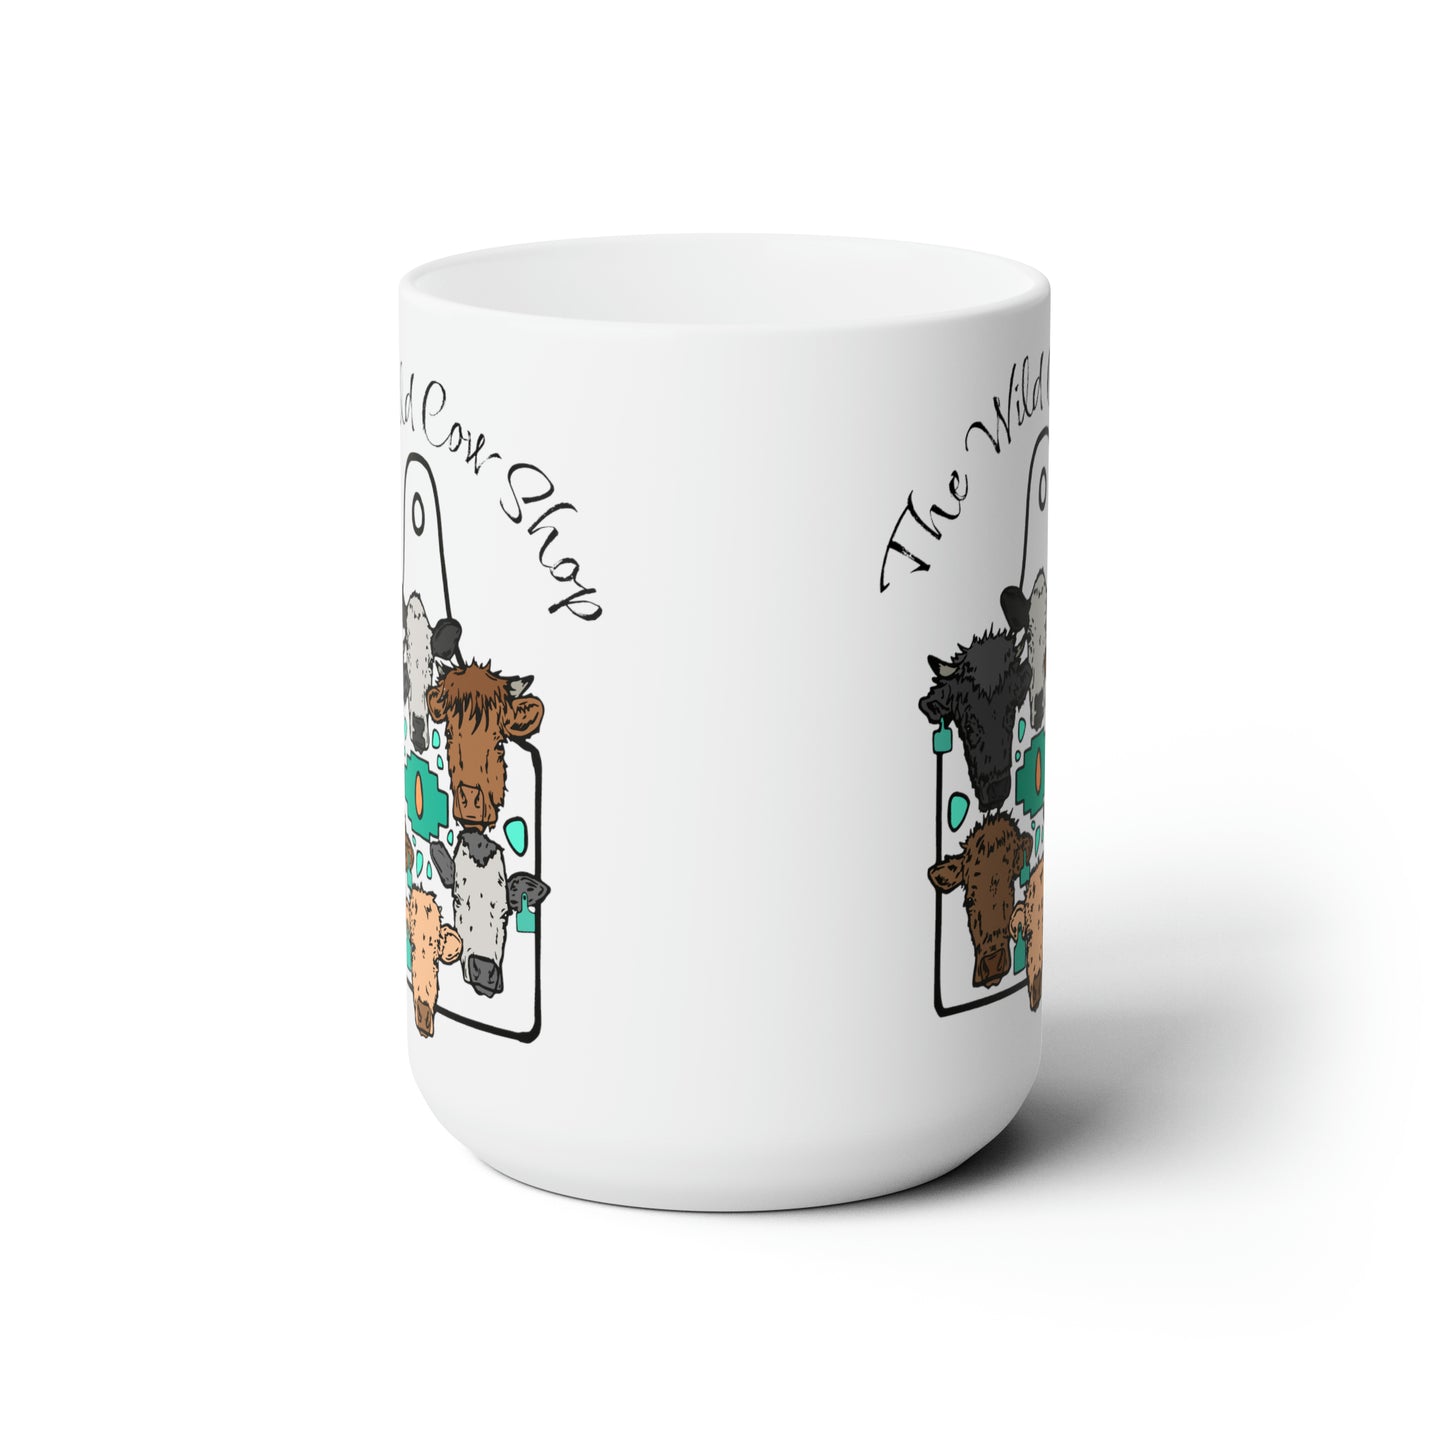 The wild cow shop Ceramic Mug 15oz